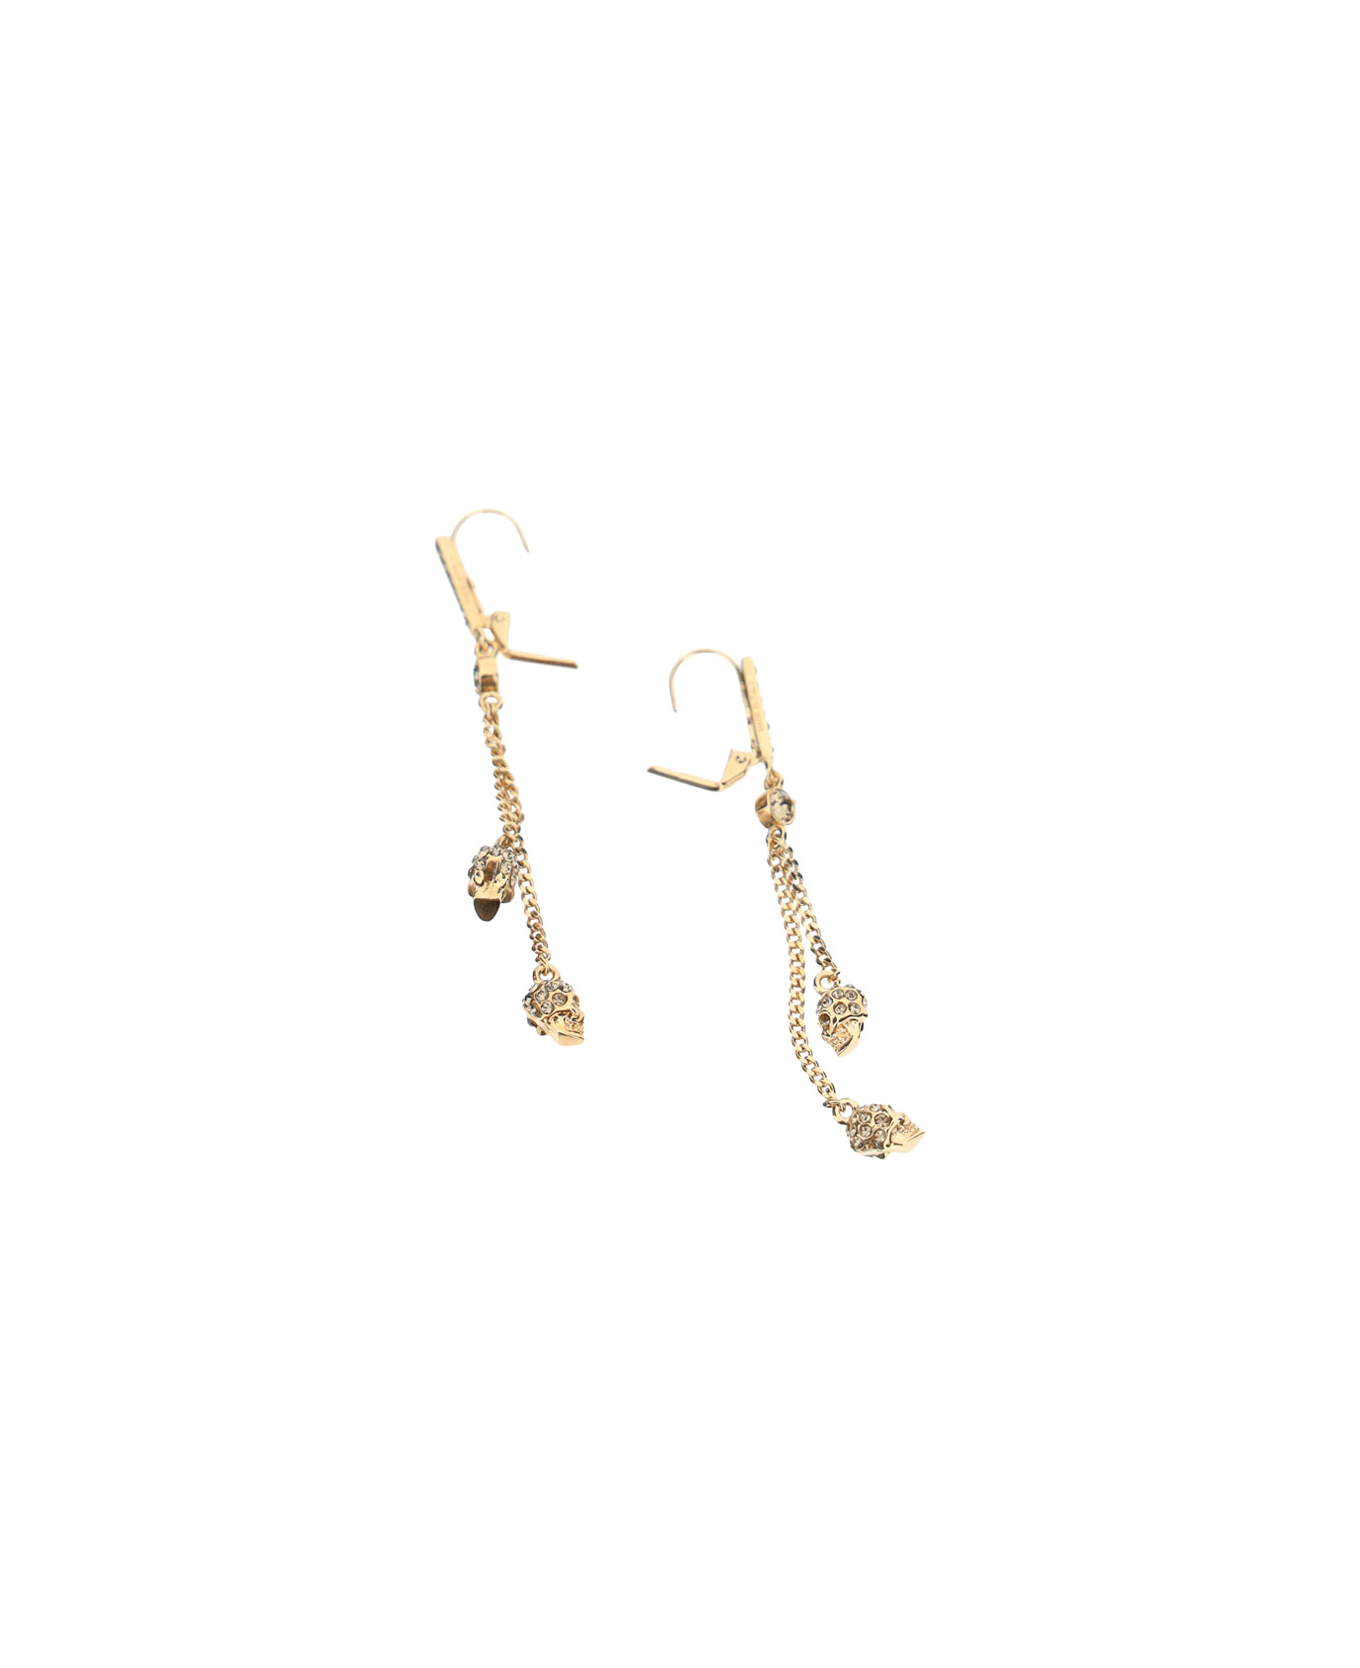 Alexander McQueen Thin Chain Earrings - 0953+greige